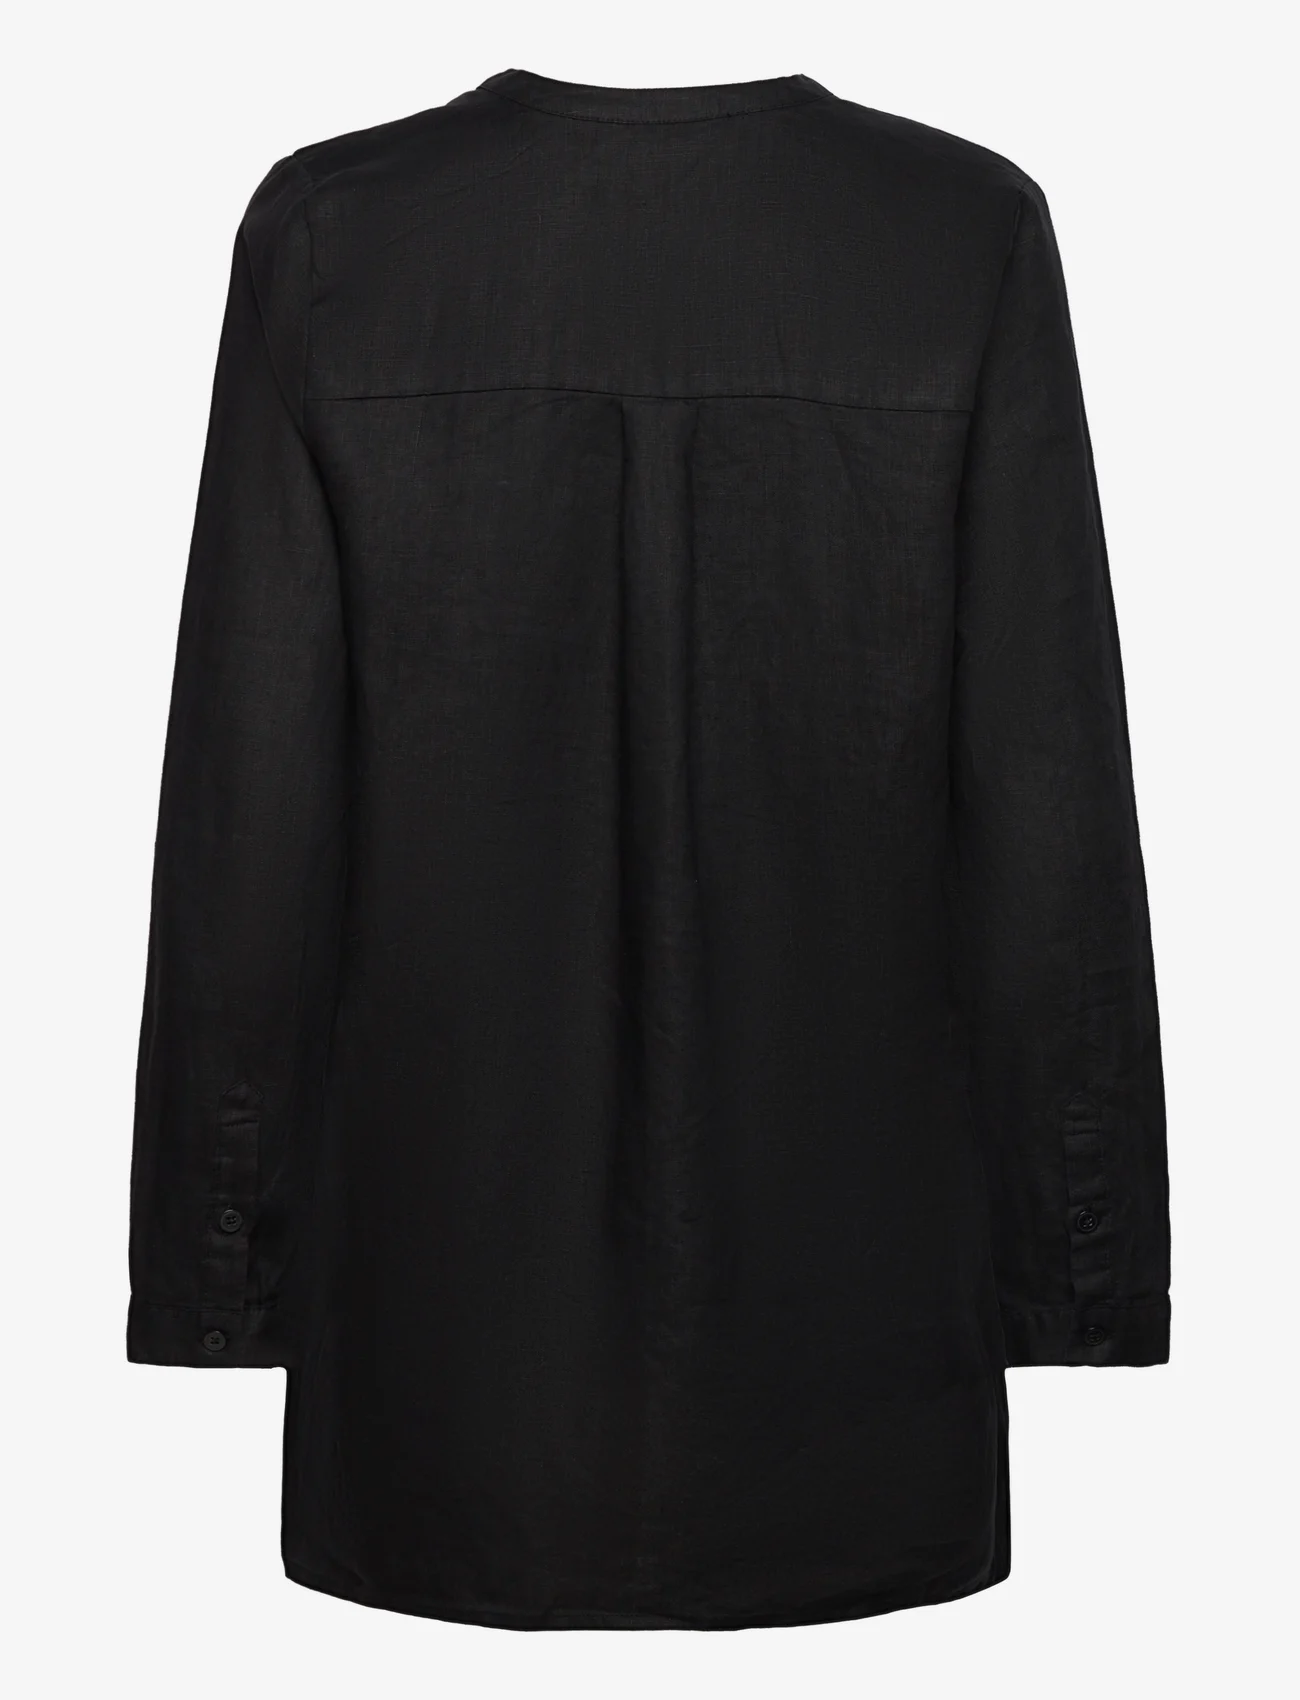 Masai - Gemi - pitkähihaiset paidat - black - 1